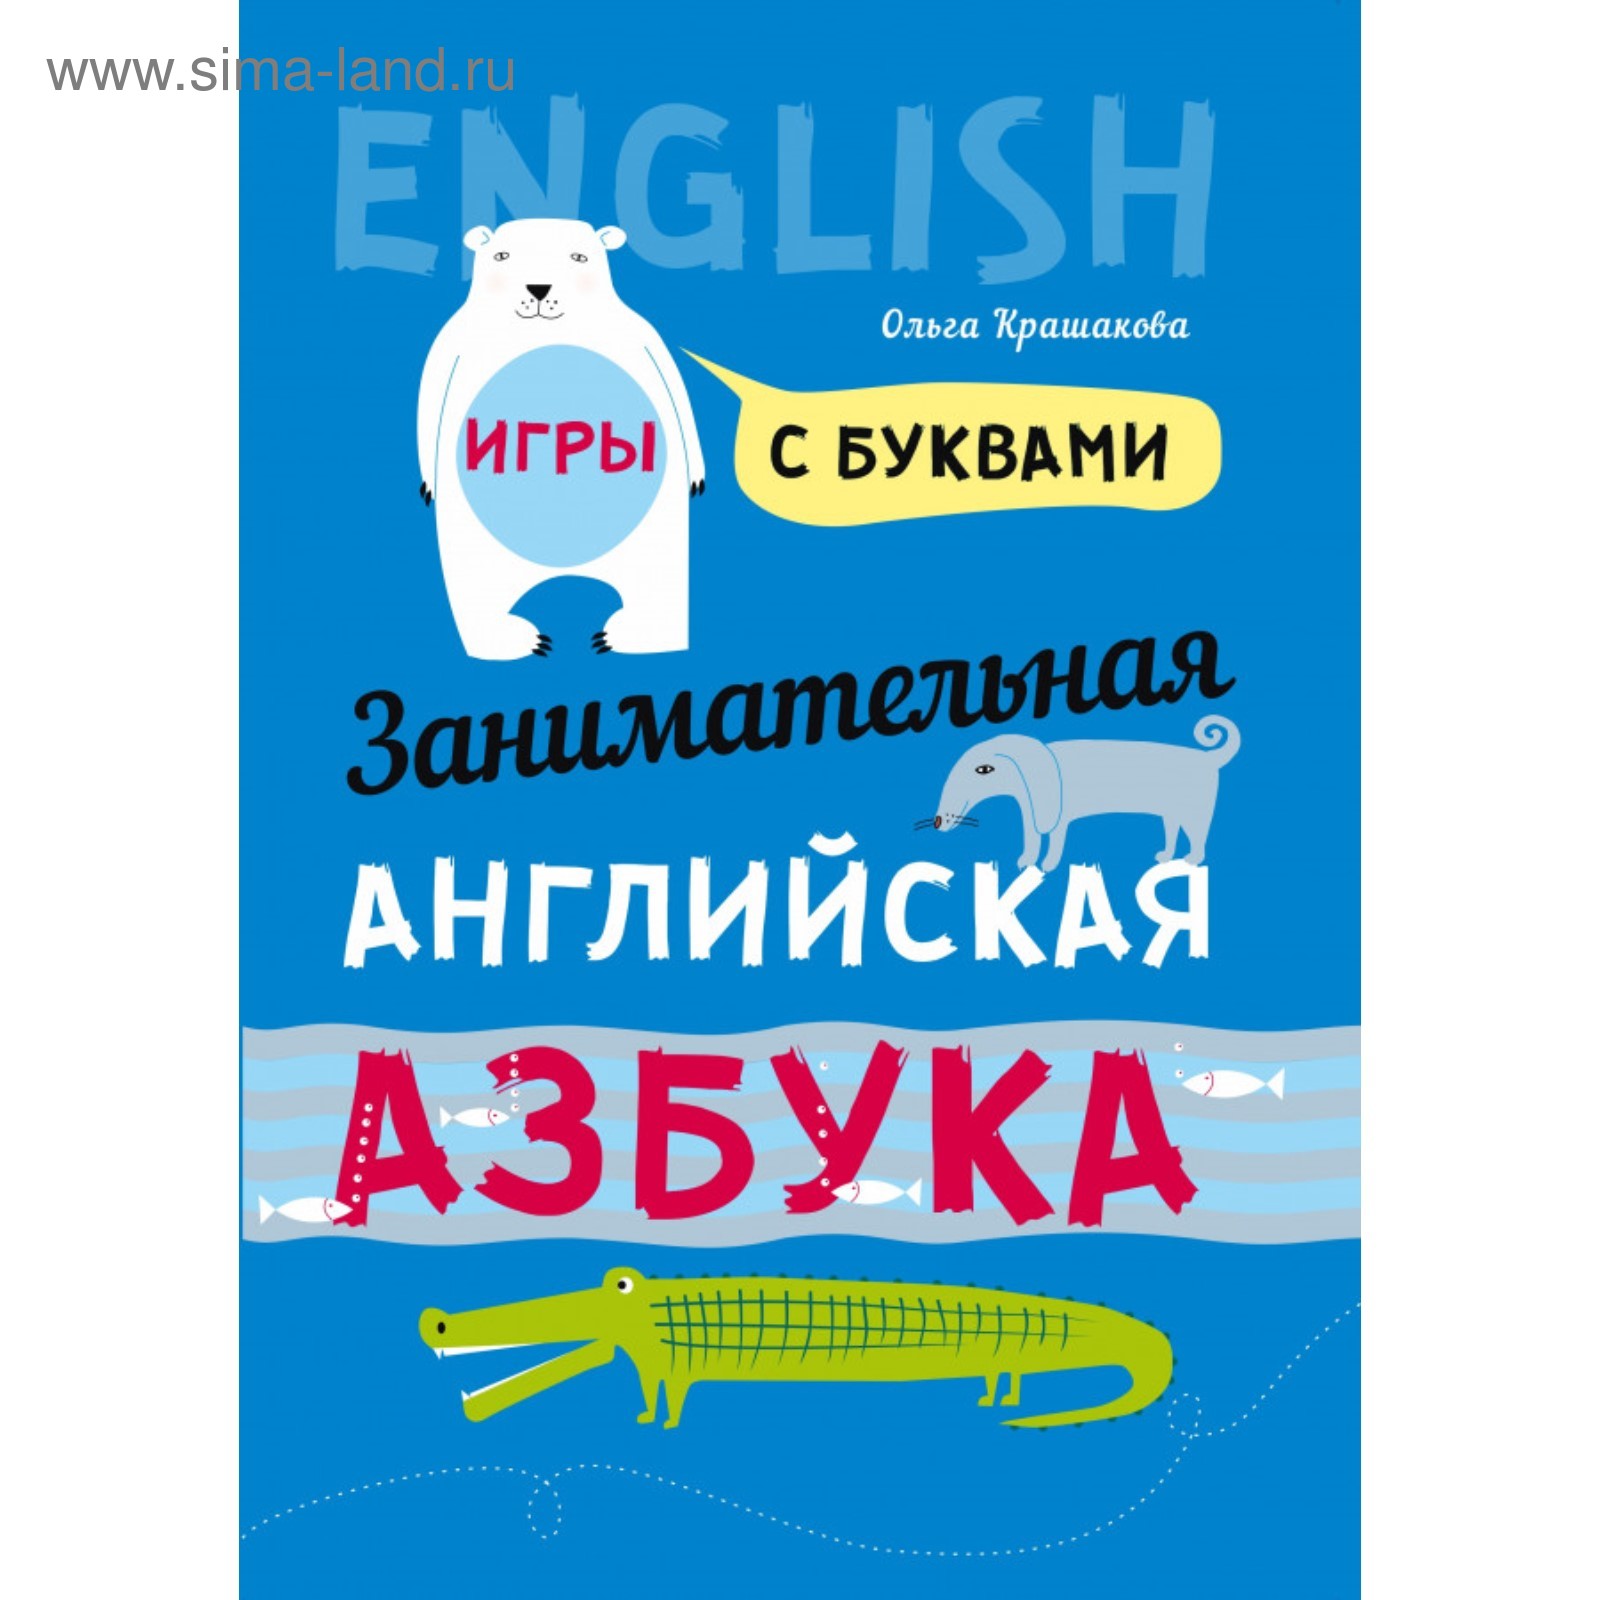 Таблица с английским алфавитом: транскрипция, произношение на русском языке